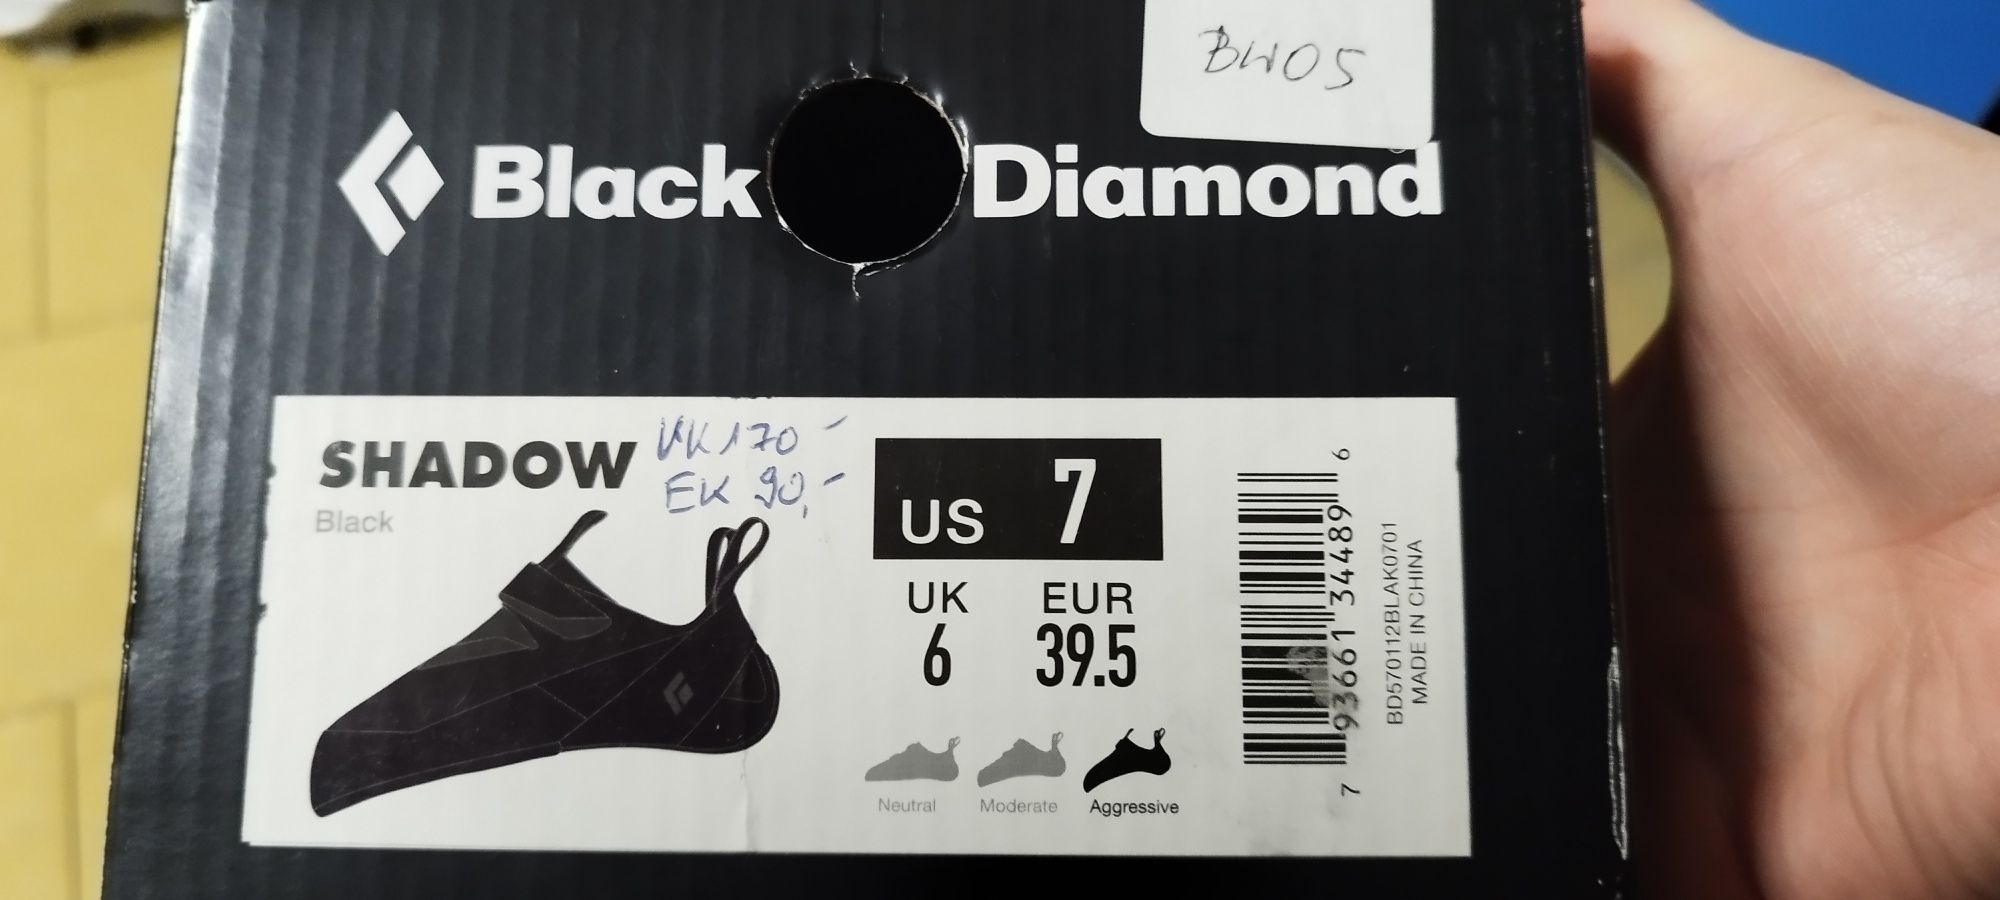 Nowe buty wspinaczkowe Black Diamond Shadow rozmiar 39,5